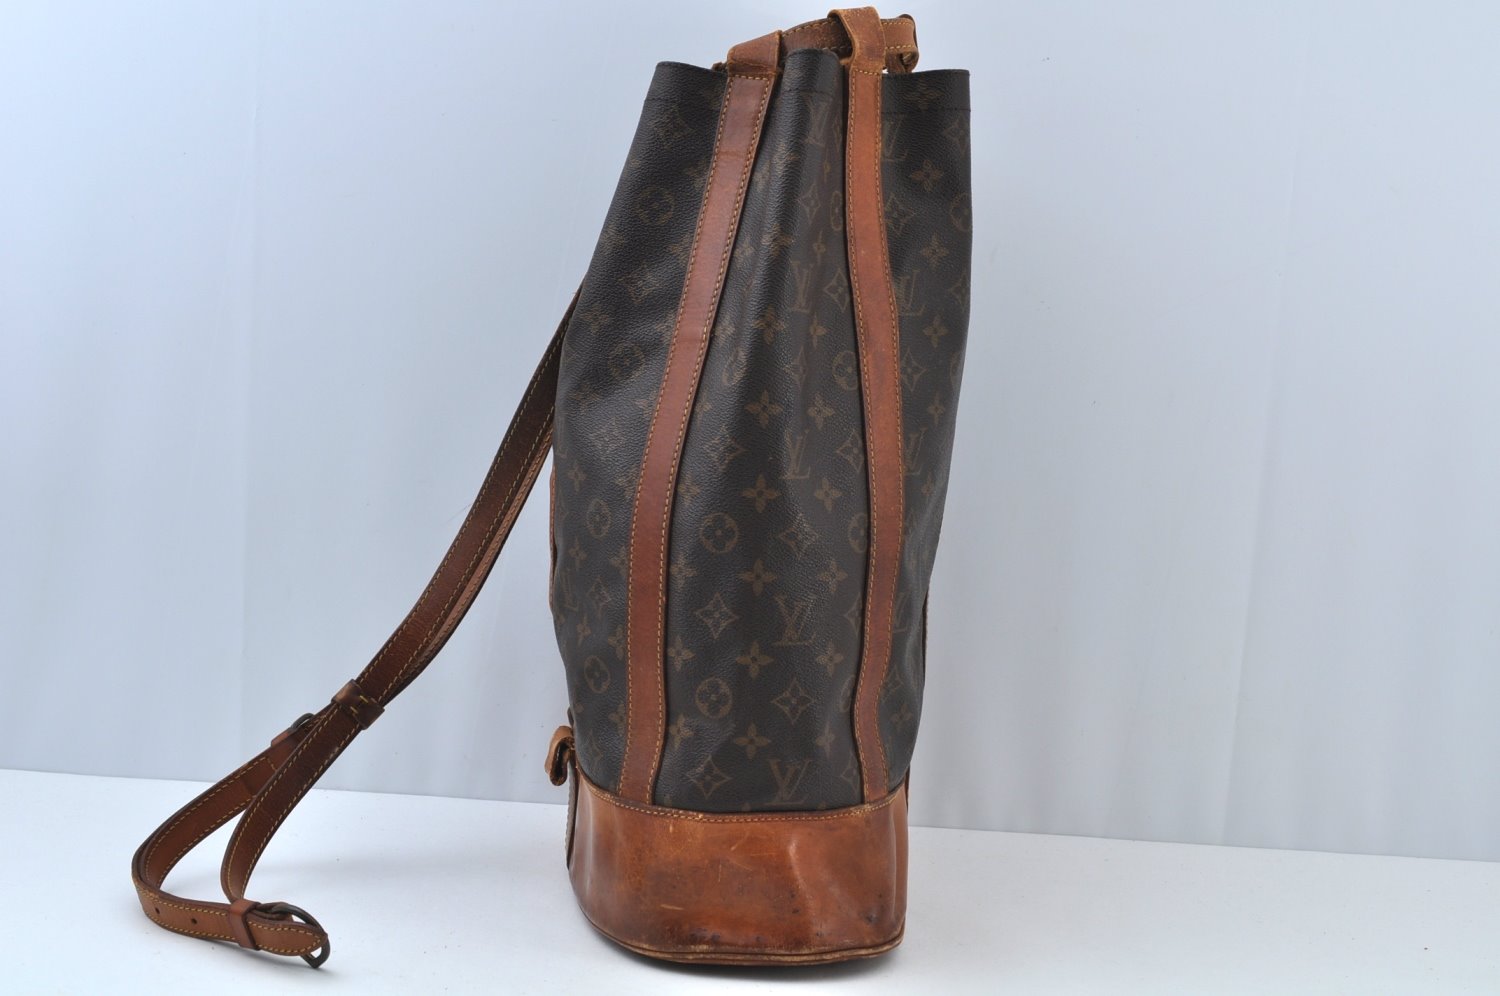 Authentic Louis Vuitton Monogram Randonnee GM Shoulder Bag M42244 Junk K9399